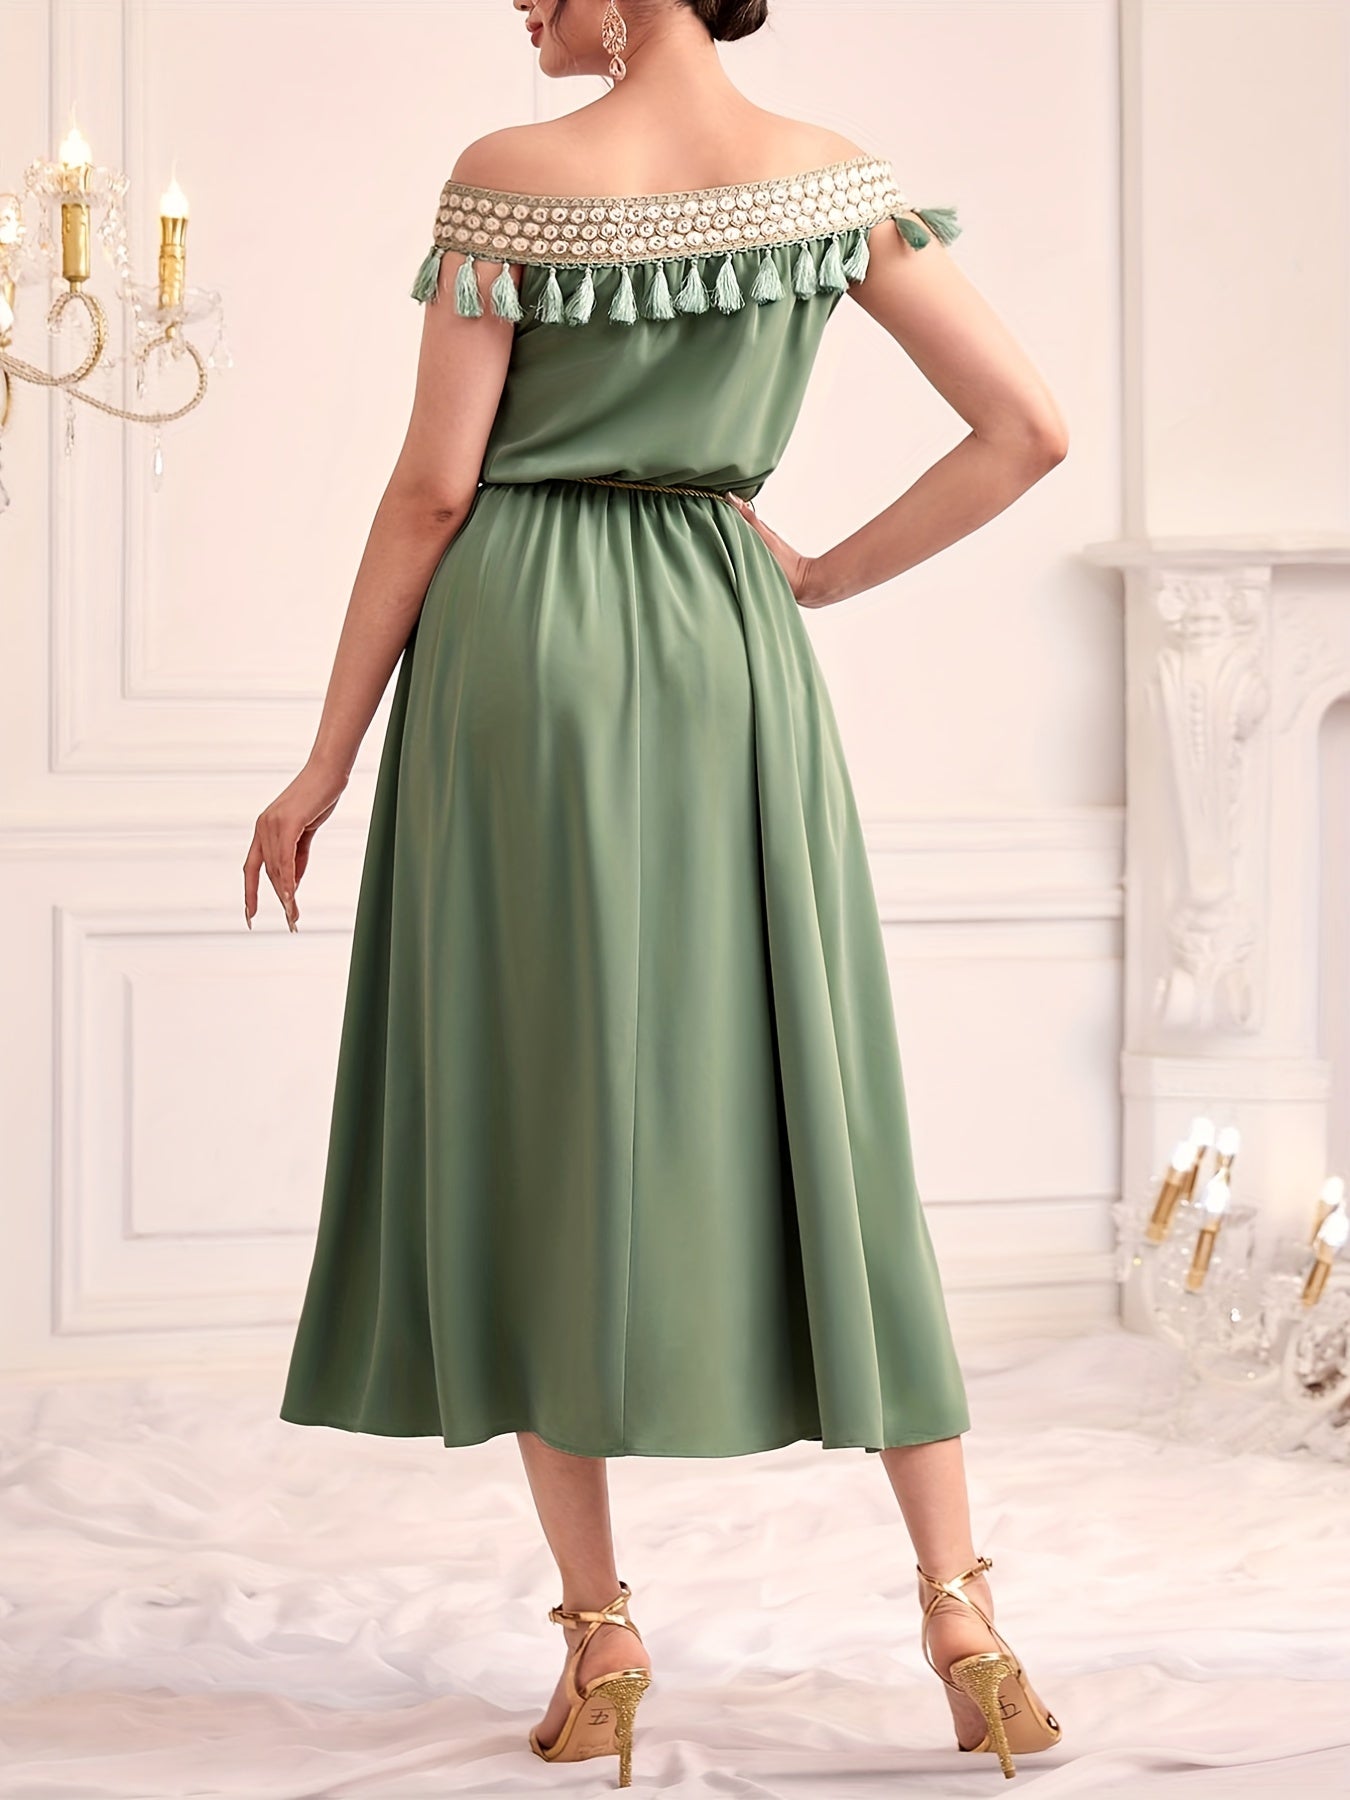 vlovelaw  Off Shoulder Tassel Dress, Elegant Solid Ruched Midi Dress, Women's Clothing